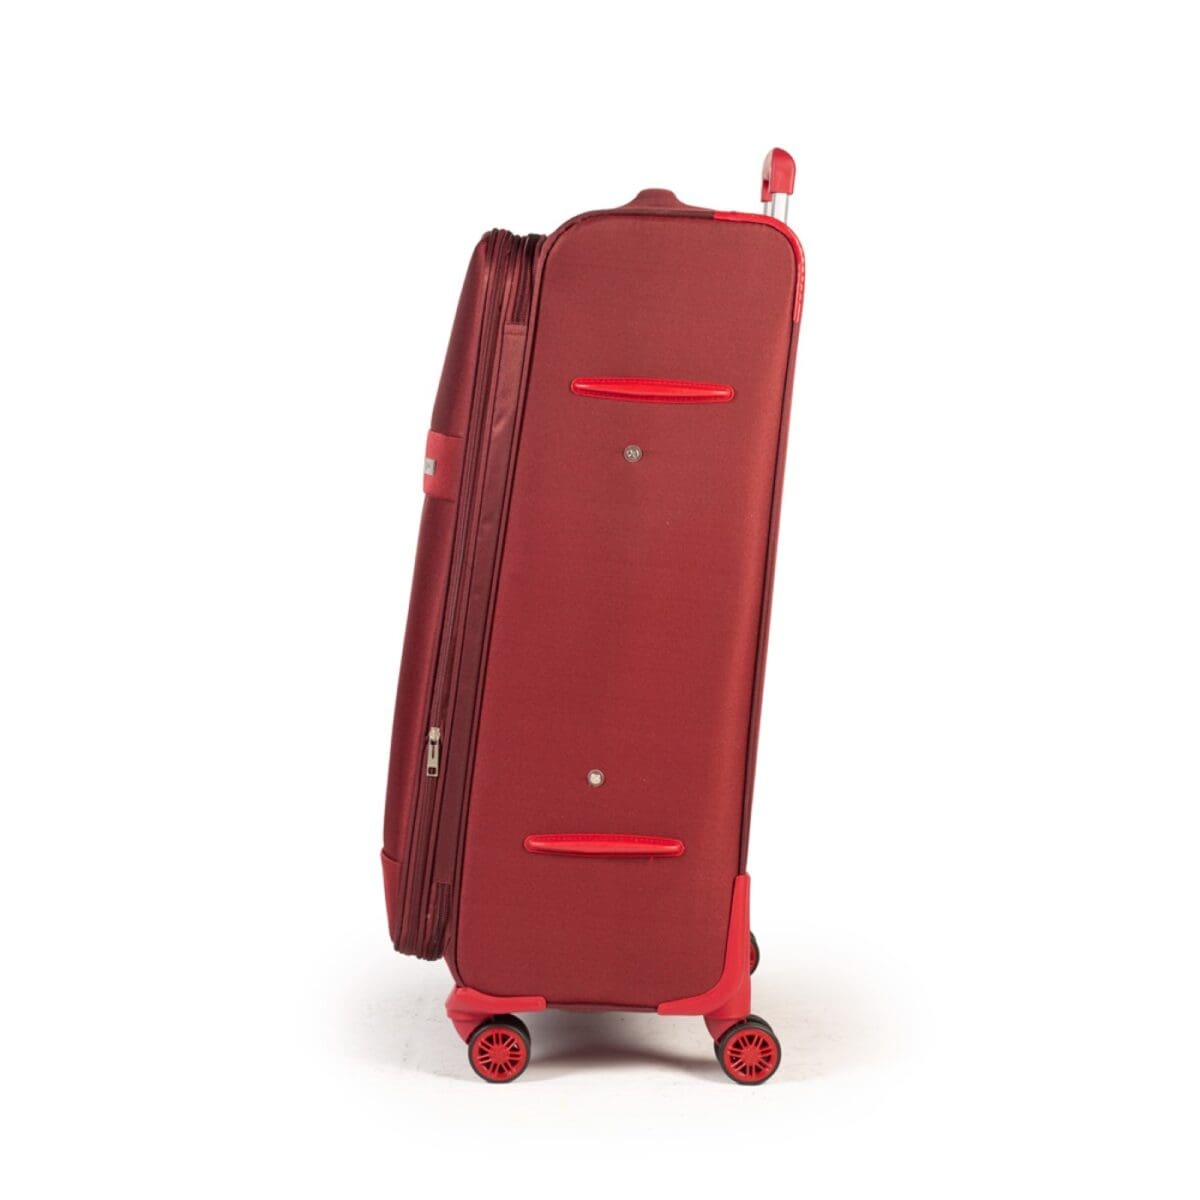 Αριστερή πλευρά βαλίτσας υφασμάτινης σε μπορντό χρώμα